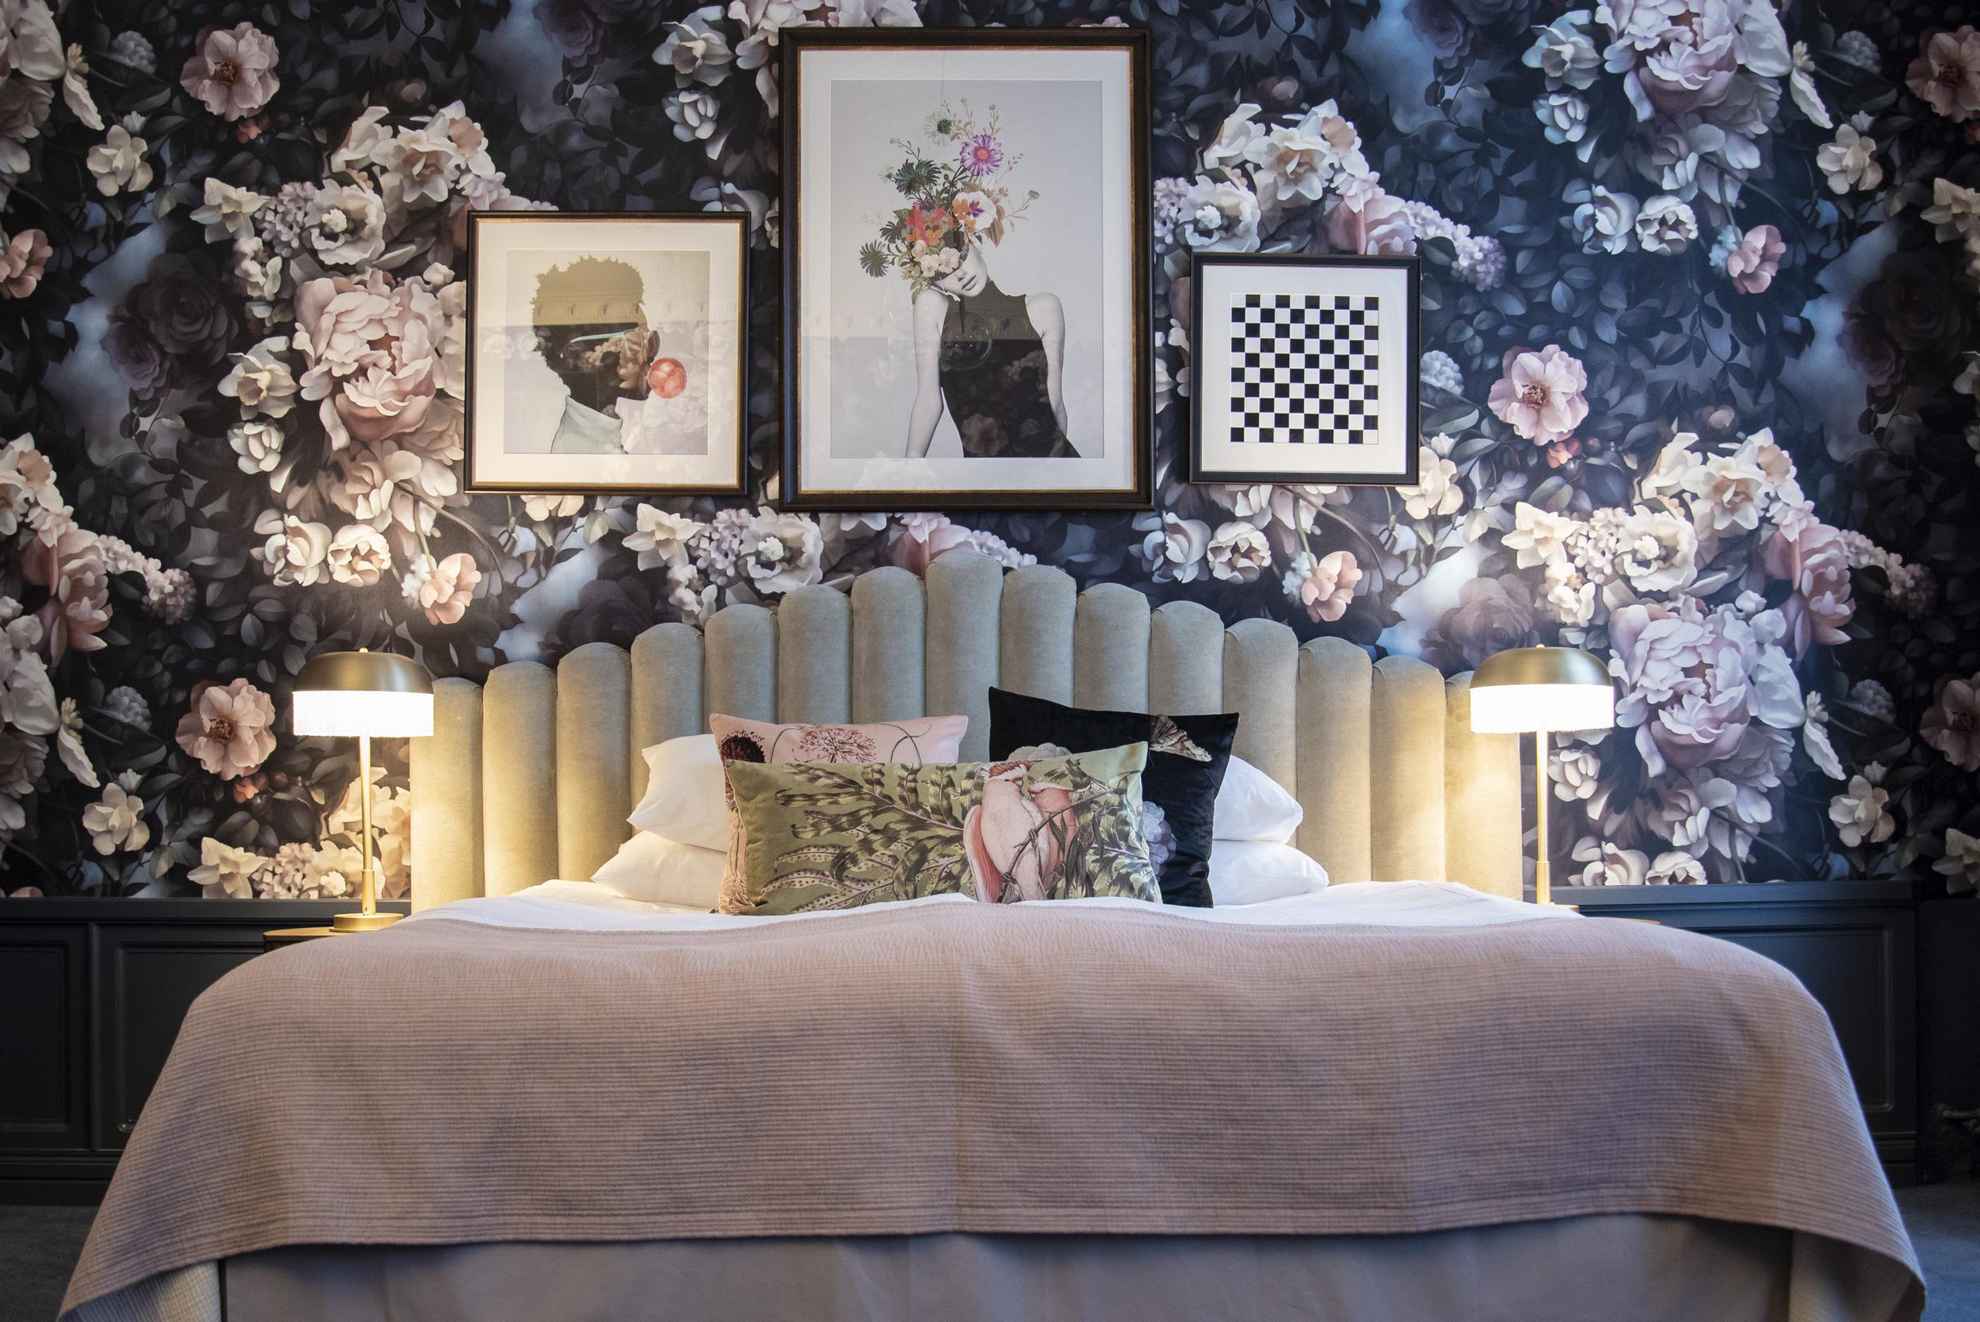 Vue sur l'intérieur d'une chambre d'hôtel. On voit un lit devant un mur recouvert de papier peint avec de grandes roses rose et blanches. Sur le mur sont accrochés trois tableaux et quatre coussins aux motifs différents sont disposés sur le haut du lit.